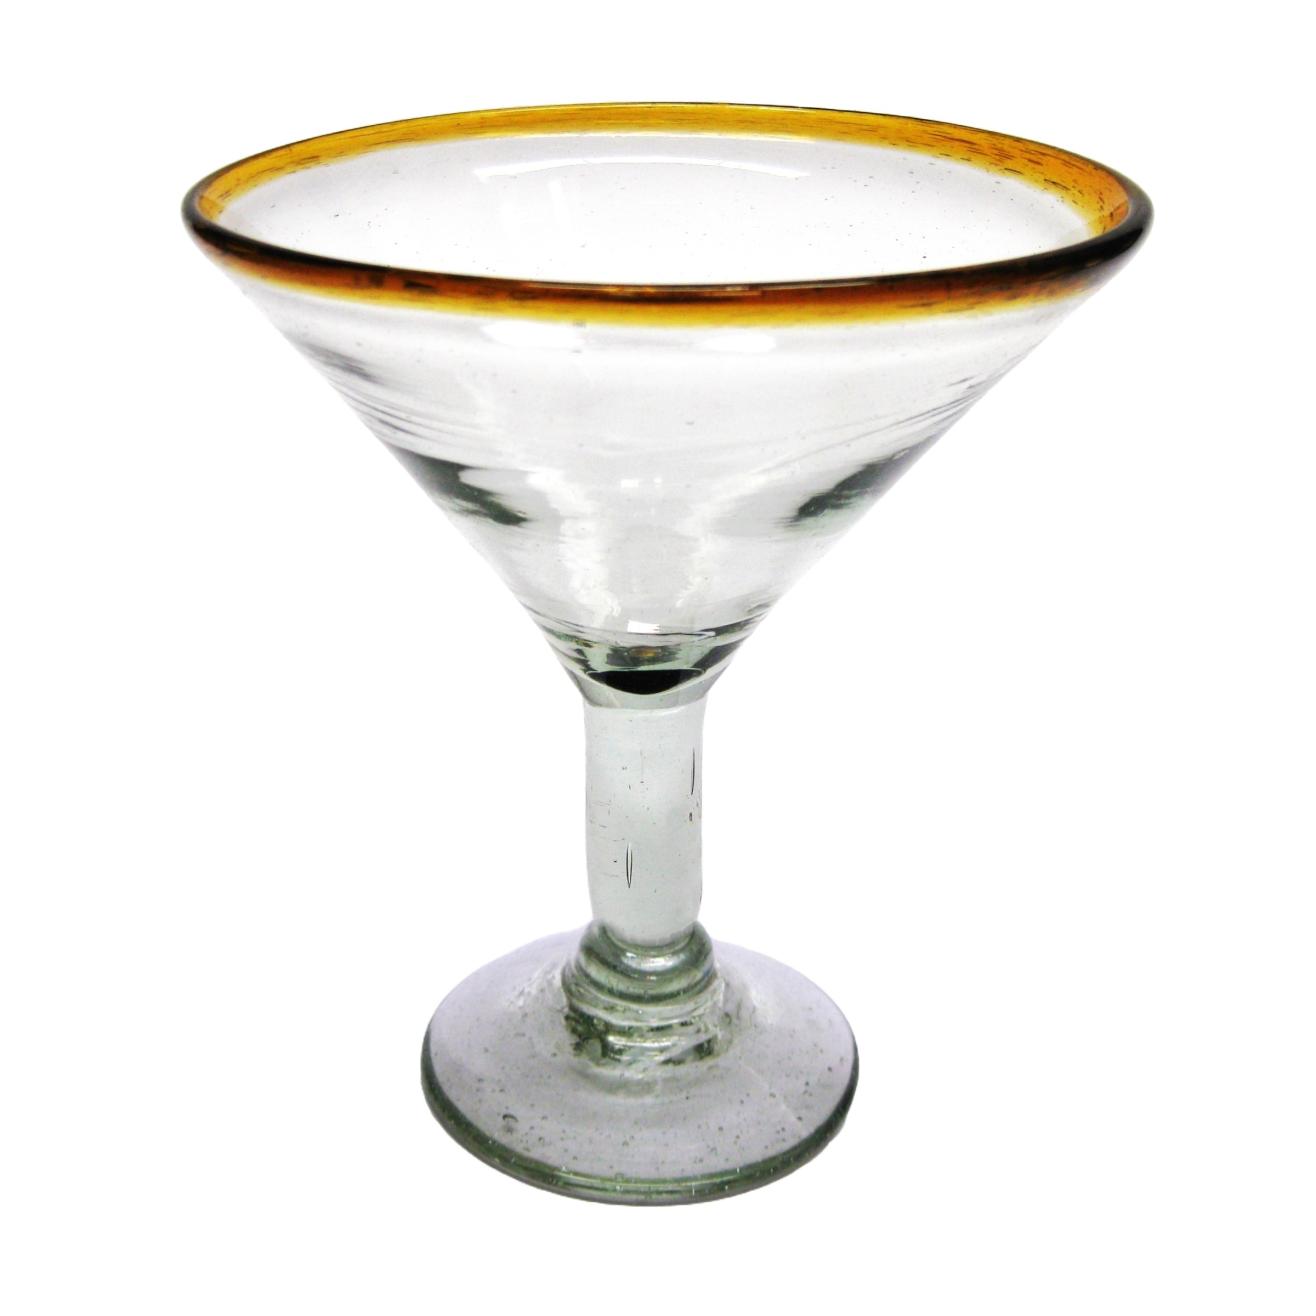 Copas para Margarita al Mayoreo / copas para martini con borde color mbar / ste hermoso juego de copas para martini le dar un toque clsico mexicano a sus fiestas.